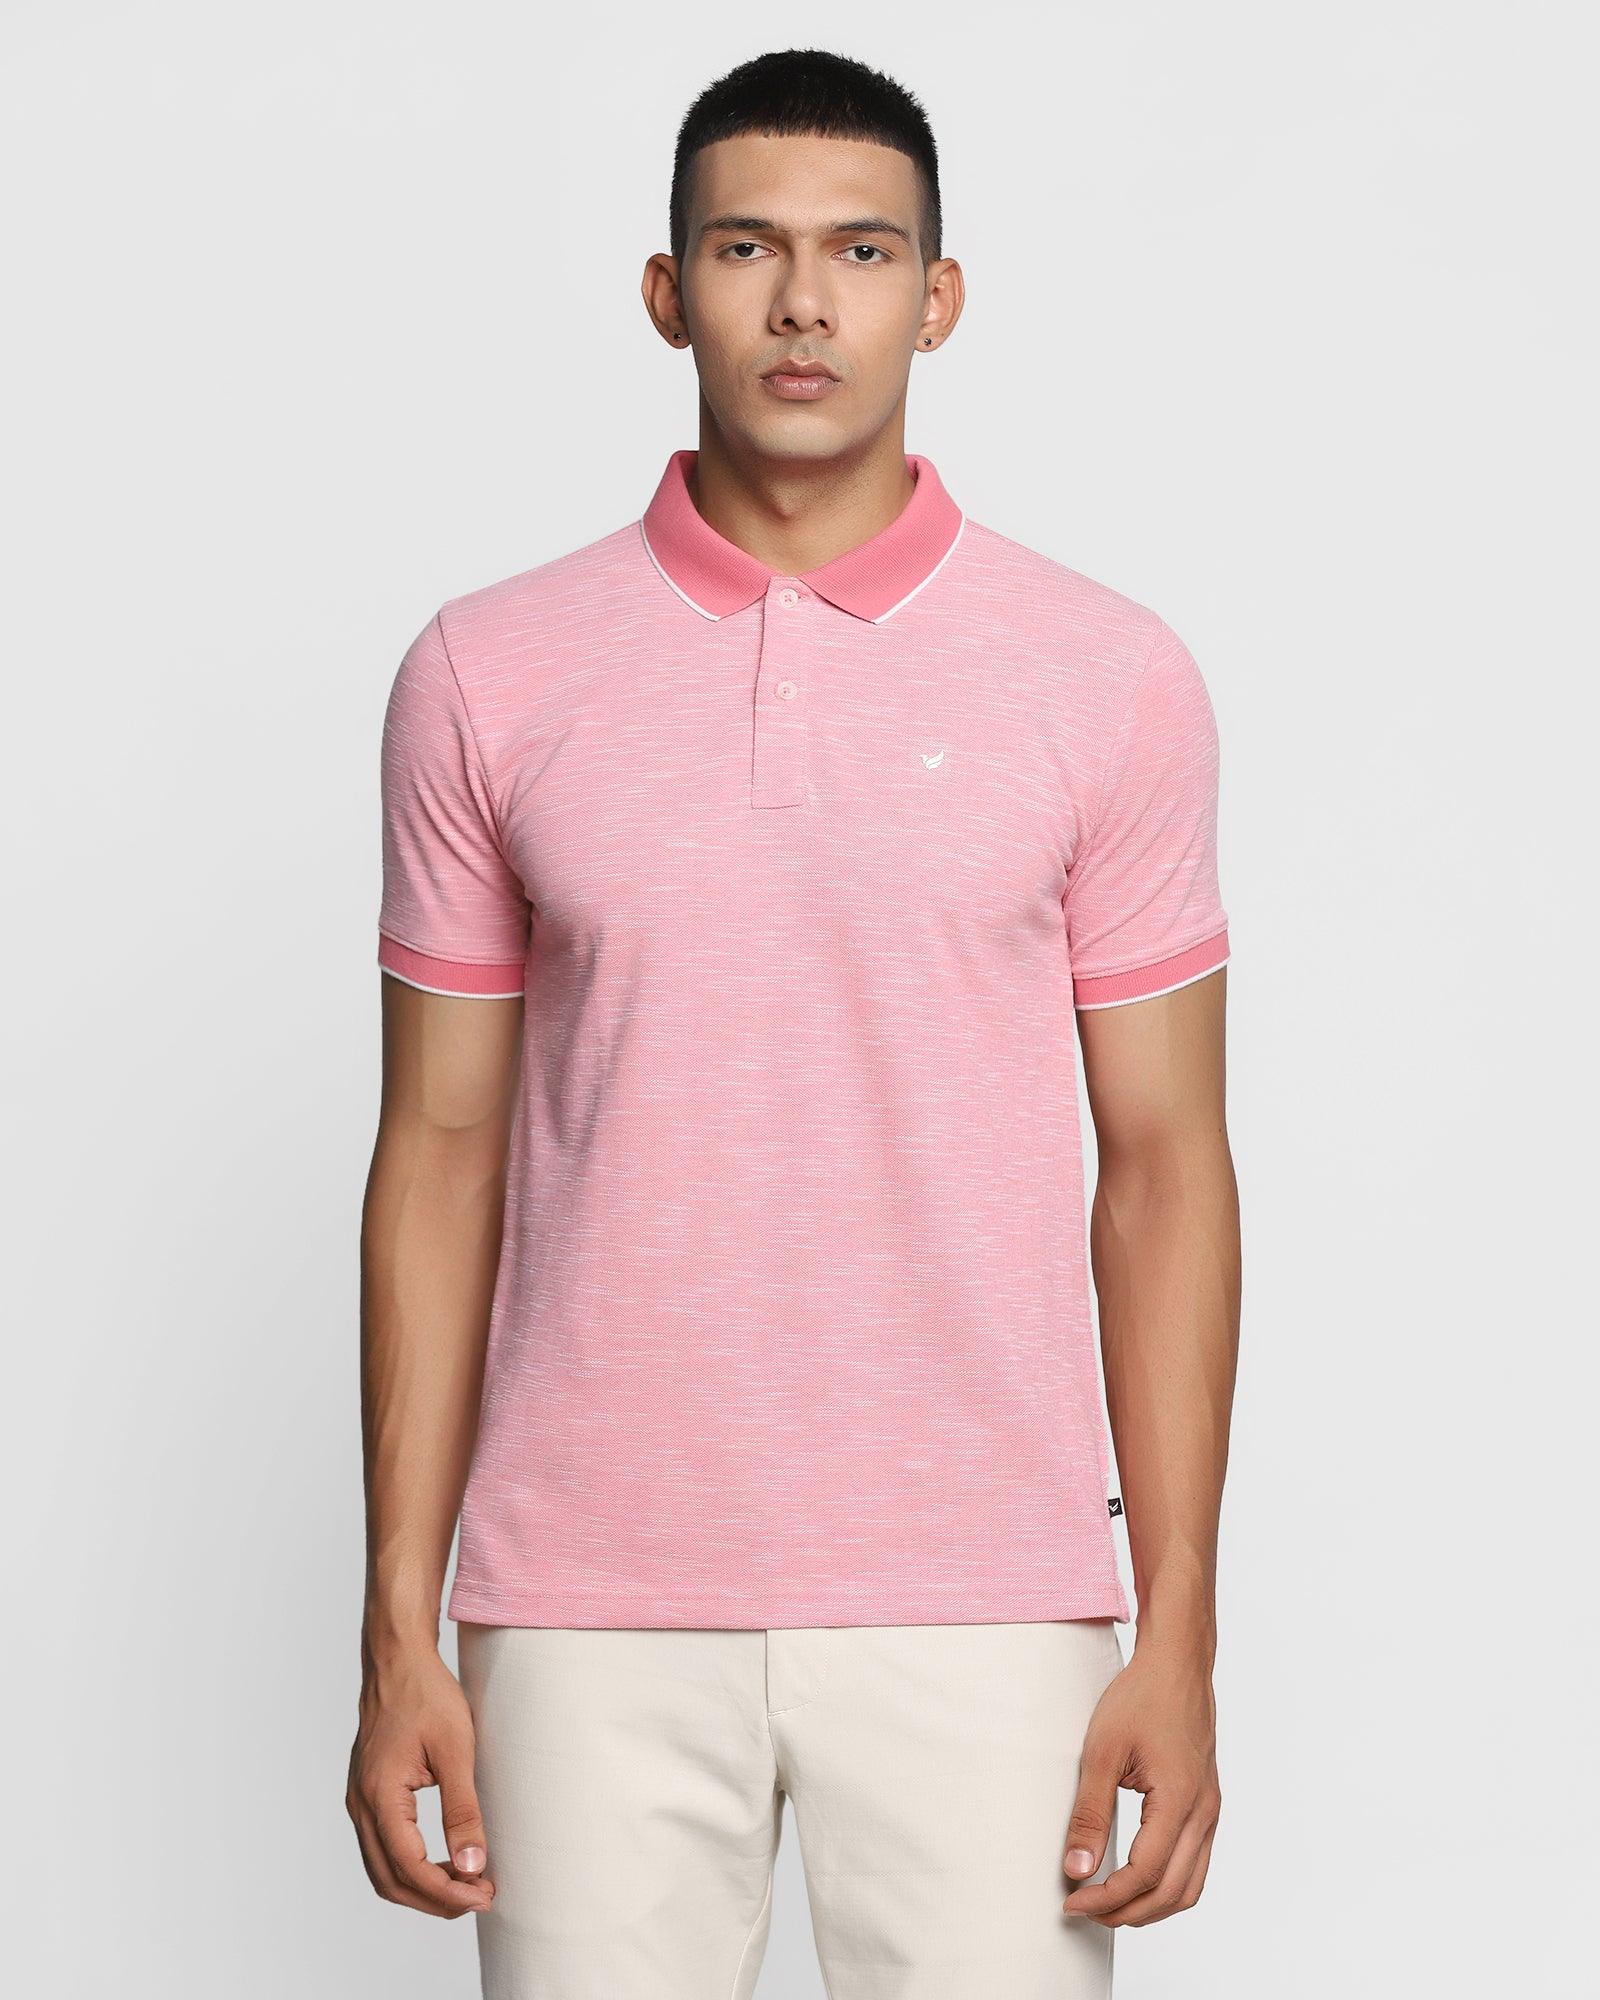 Polo Rasberry Textured T Shirt - Osman